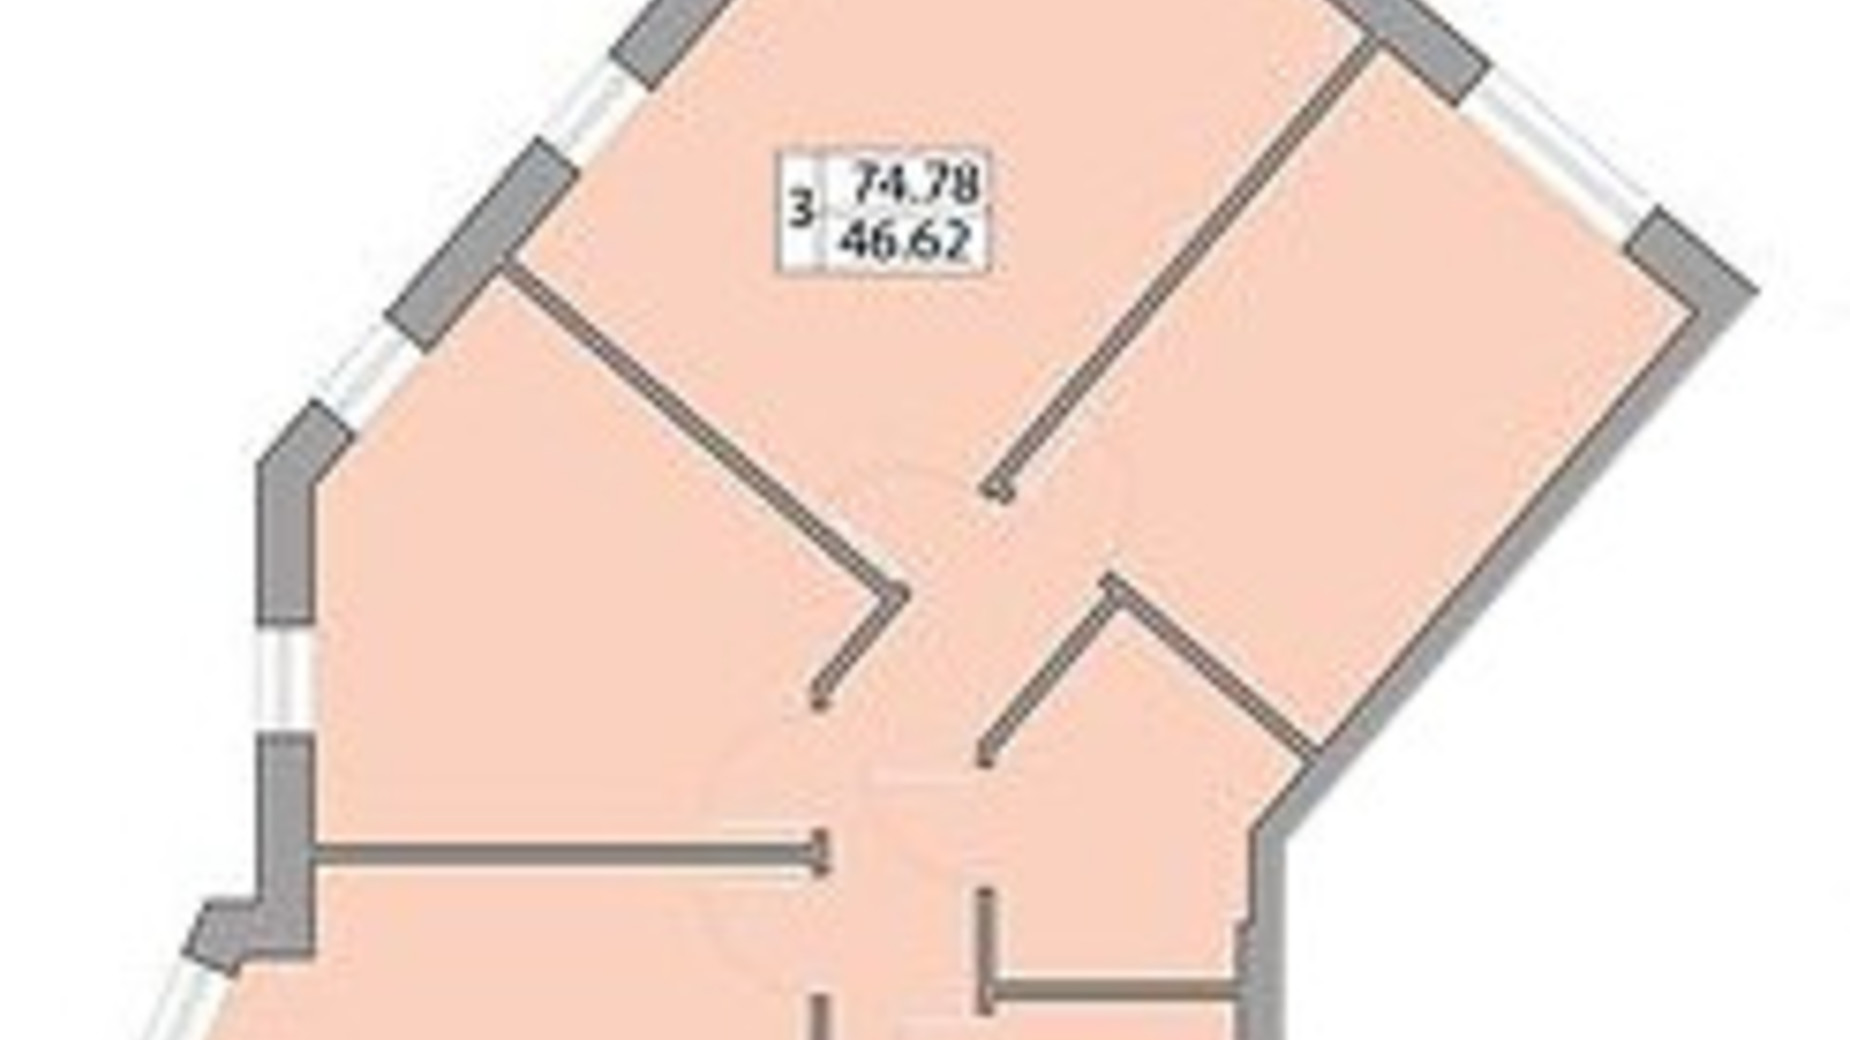 Планировка 3-комнатной квартиры в ЖК Praha Platinum 74.78 м², фото 586279